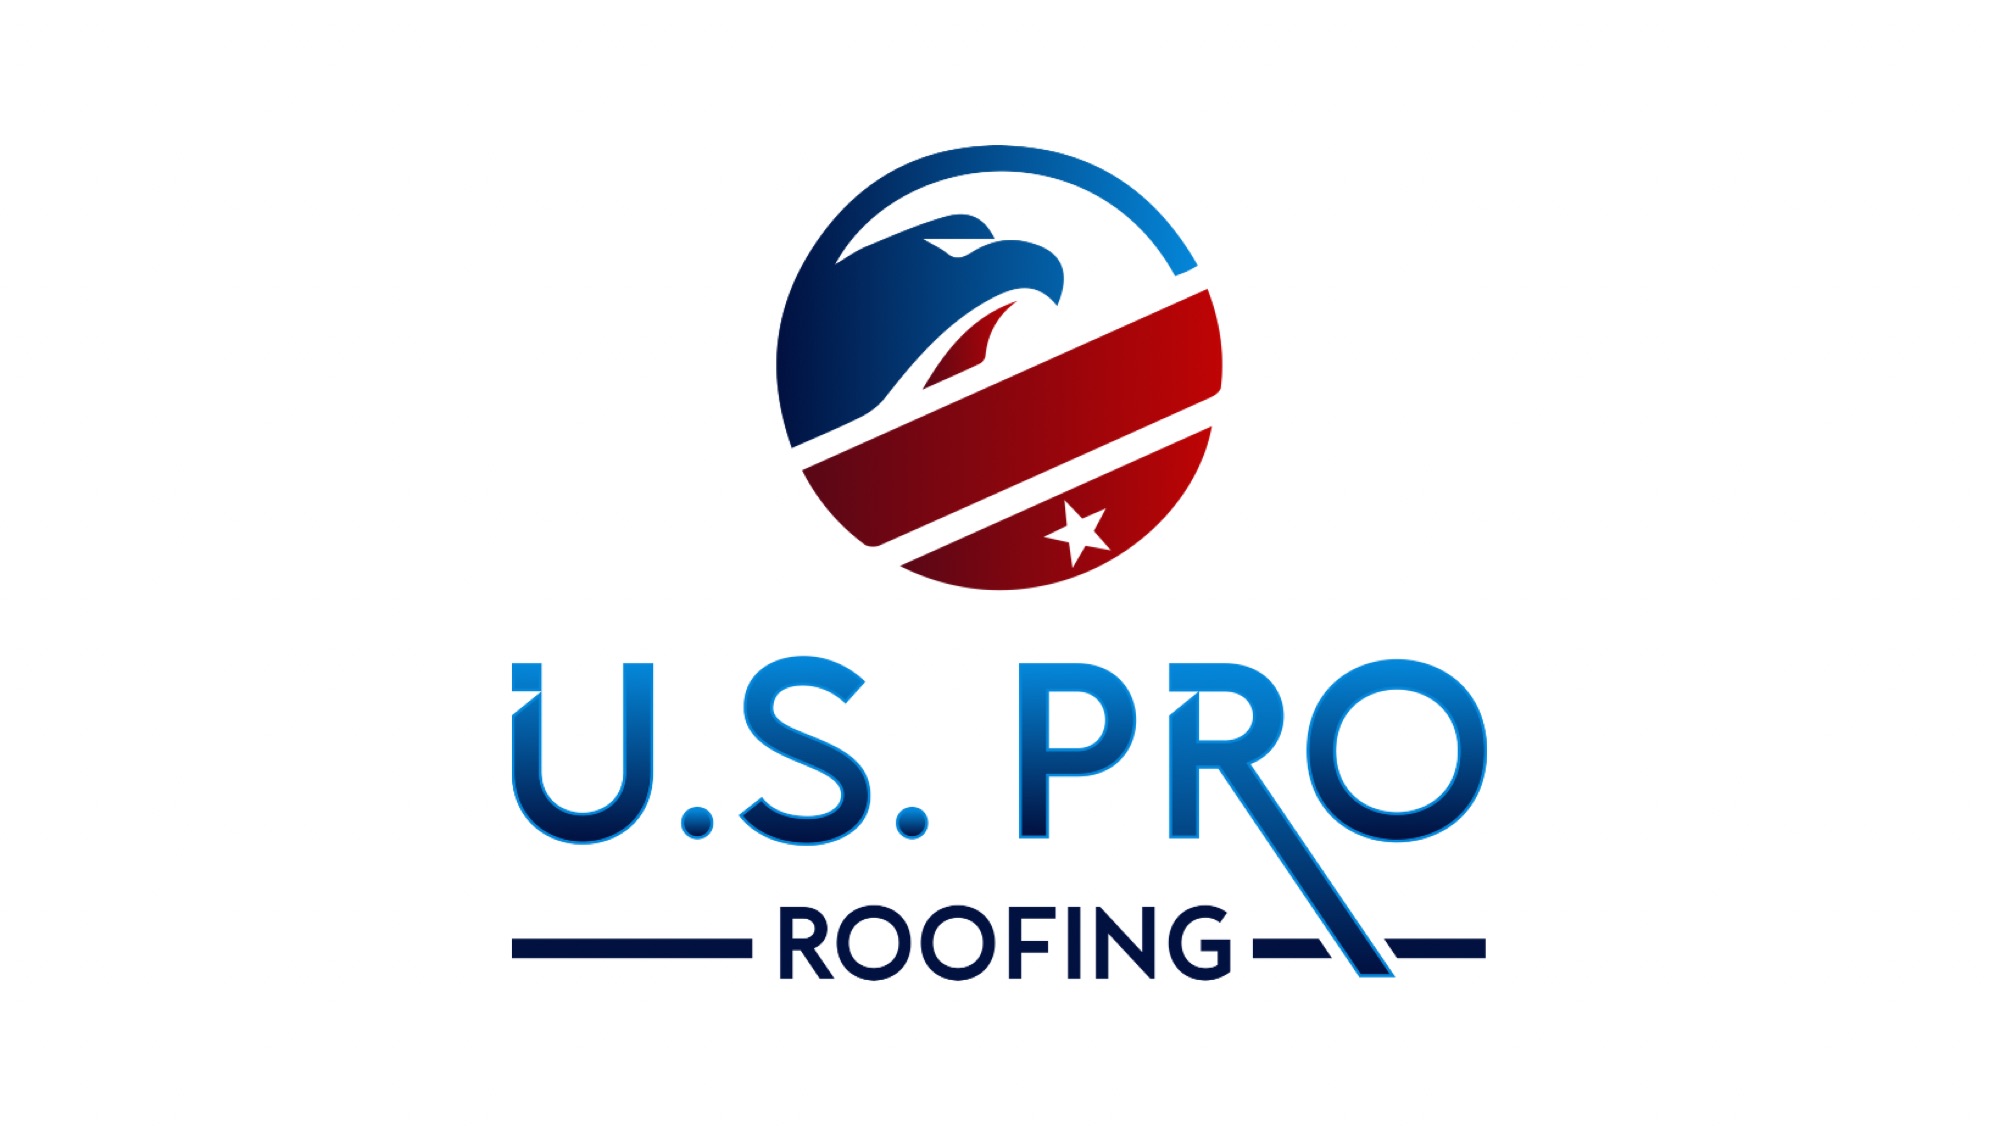 U.S. Pro Roofing, LLC Logo